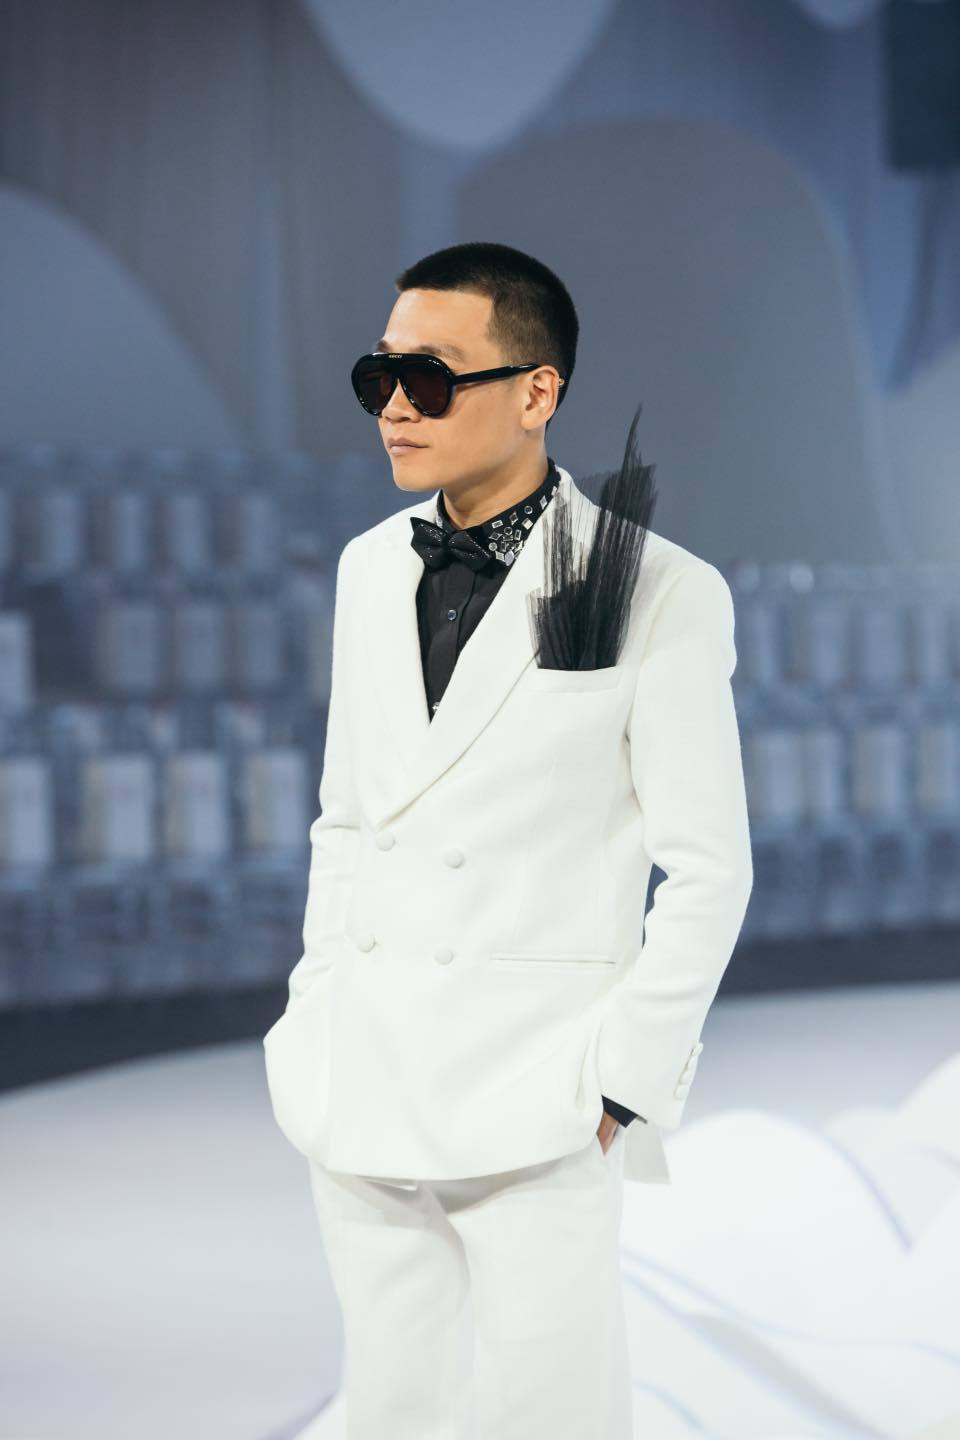  
Chủ nhân bản rap Hai thế giới diện vest trắng, lần đầu catwalk. (Ảnh: FBNV)